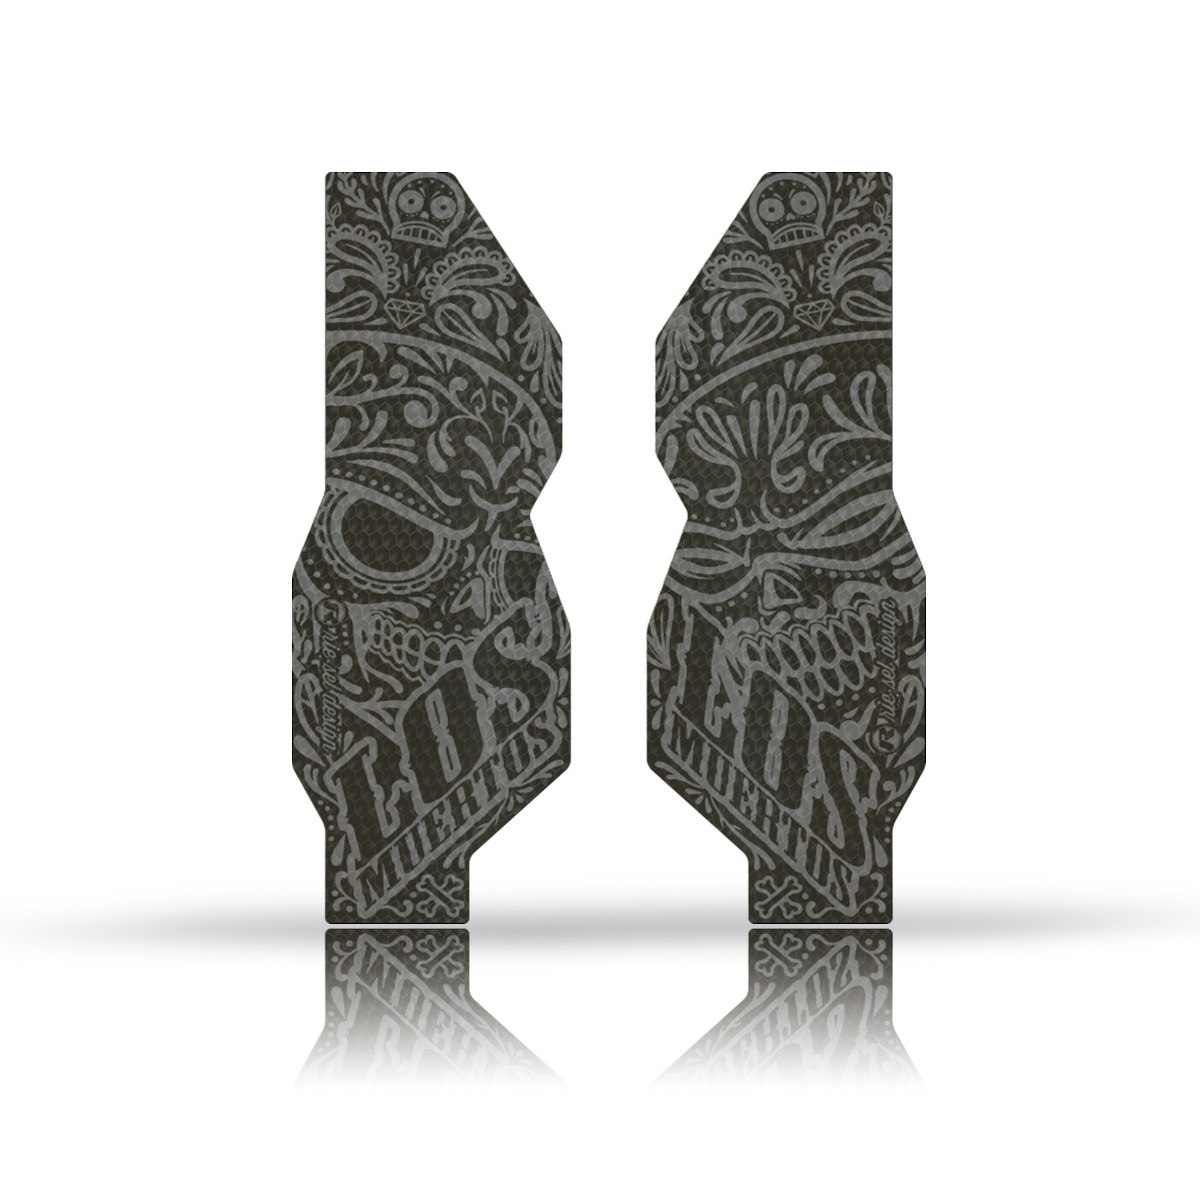 Produktbild von rie:sel design fork:Tape 3000 Gabelschutz - los muertos